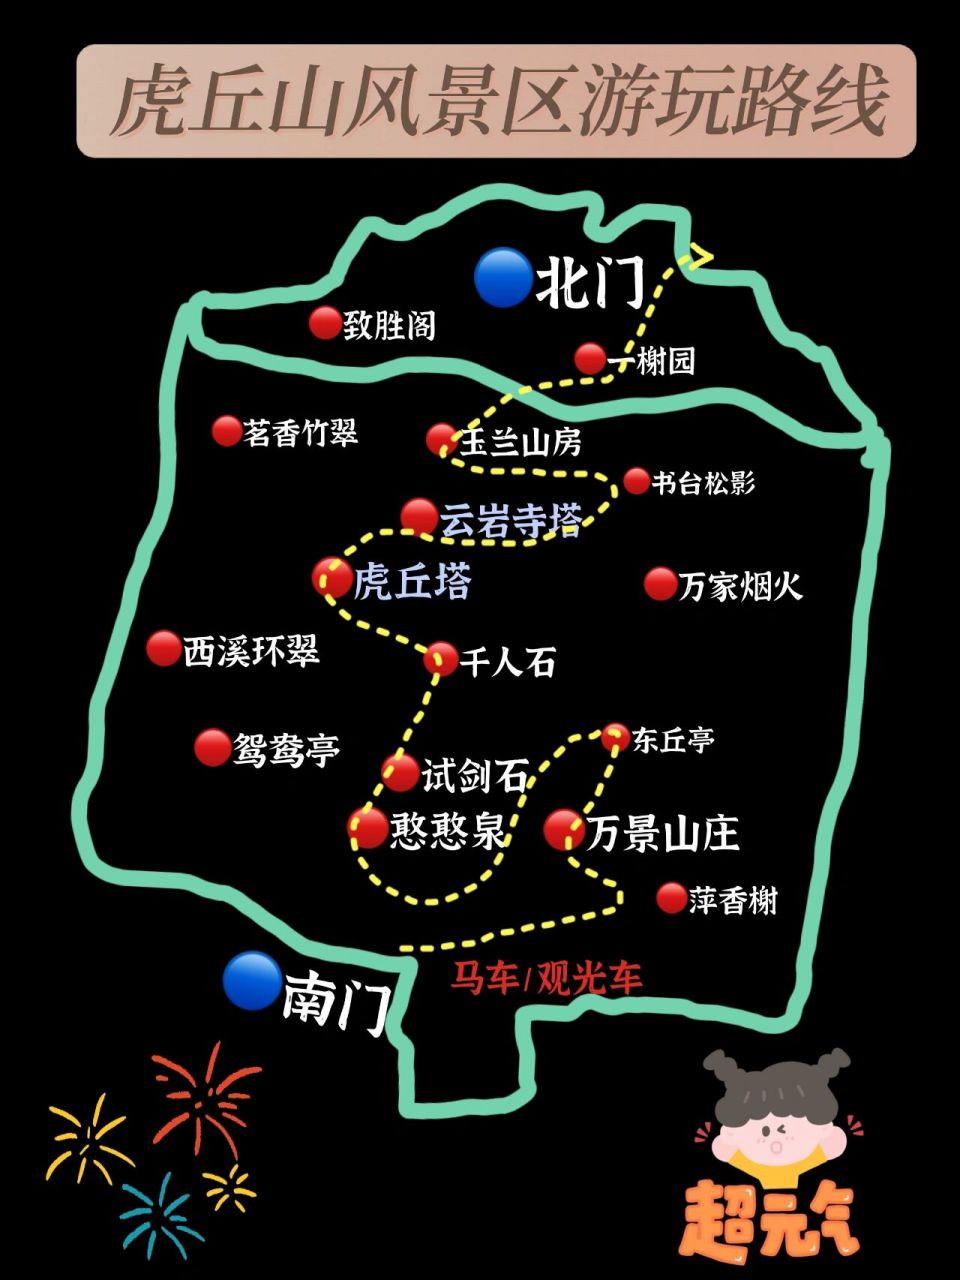 苏州虎丘区乡镇地图图片